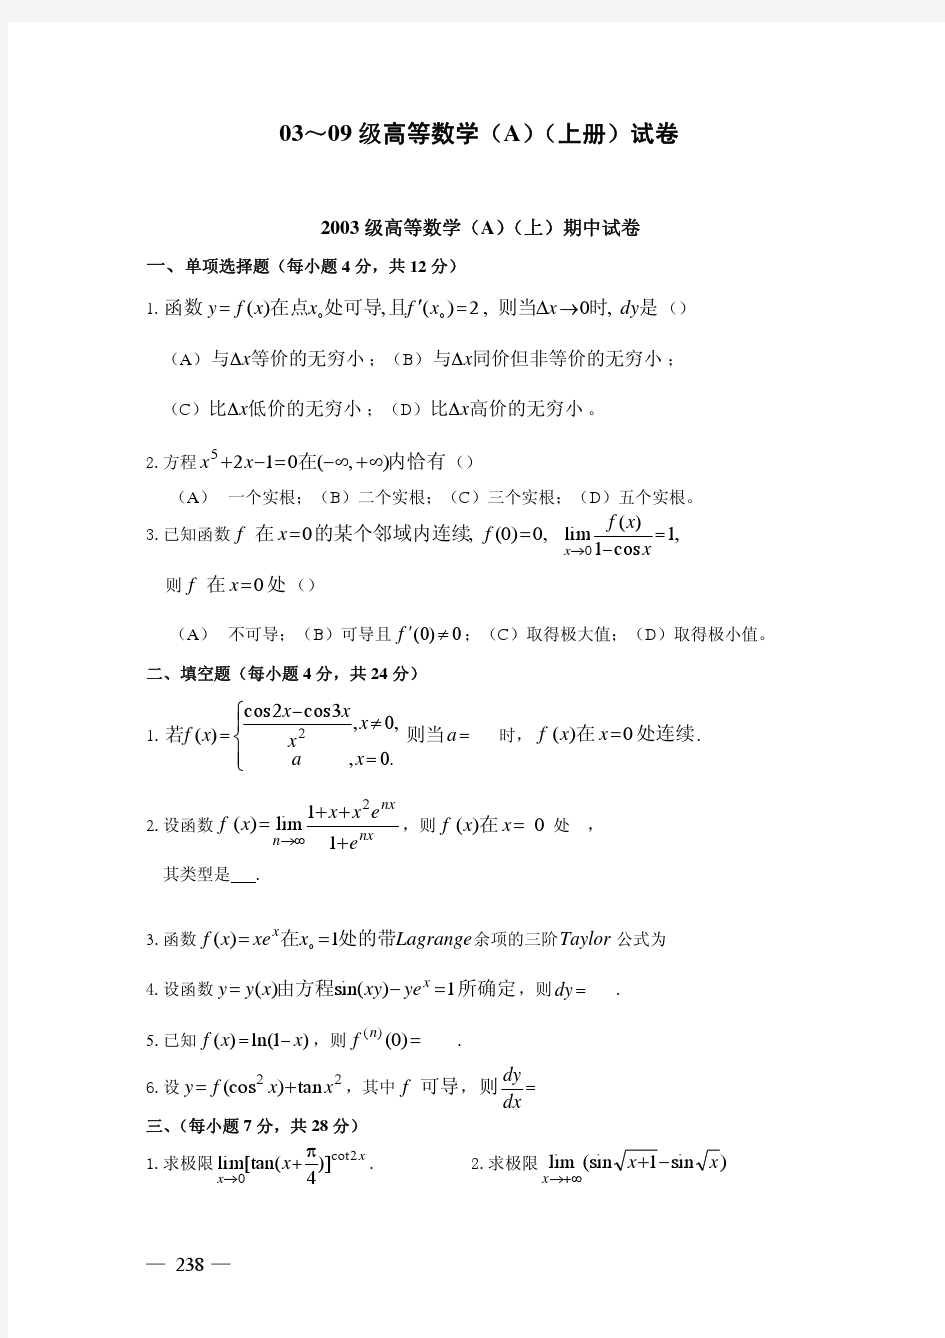 高等数学(A,B)(上册)试卷(03_～09)(完整版)